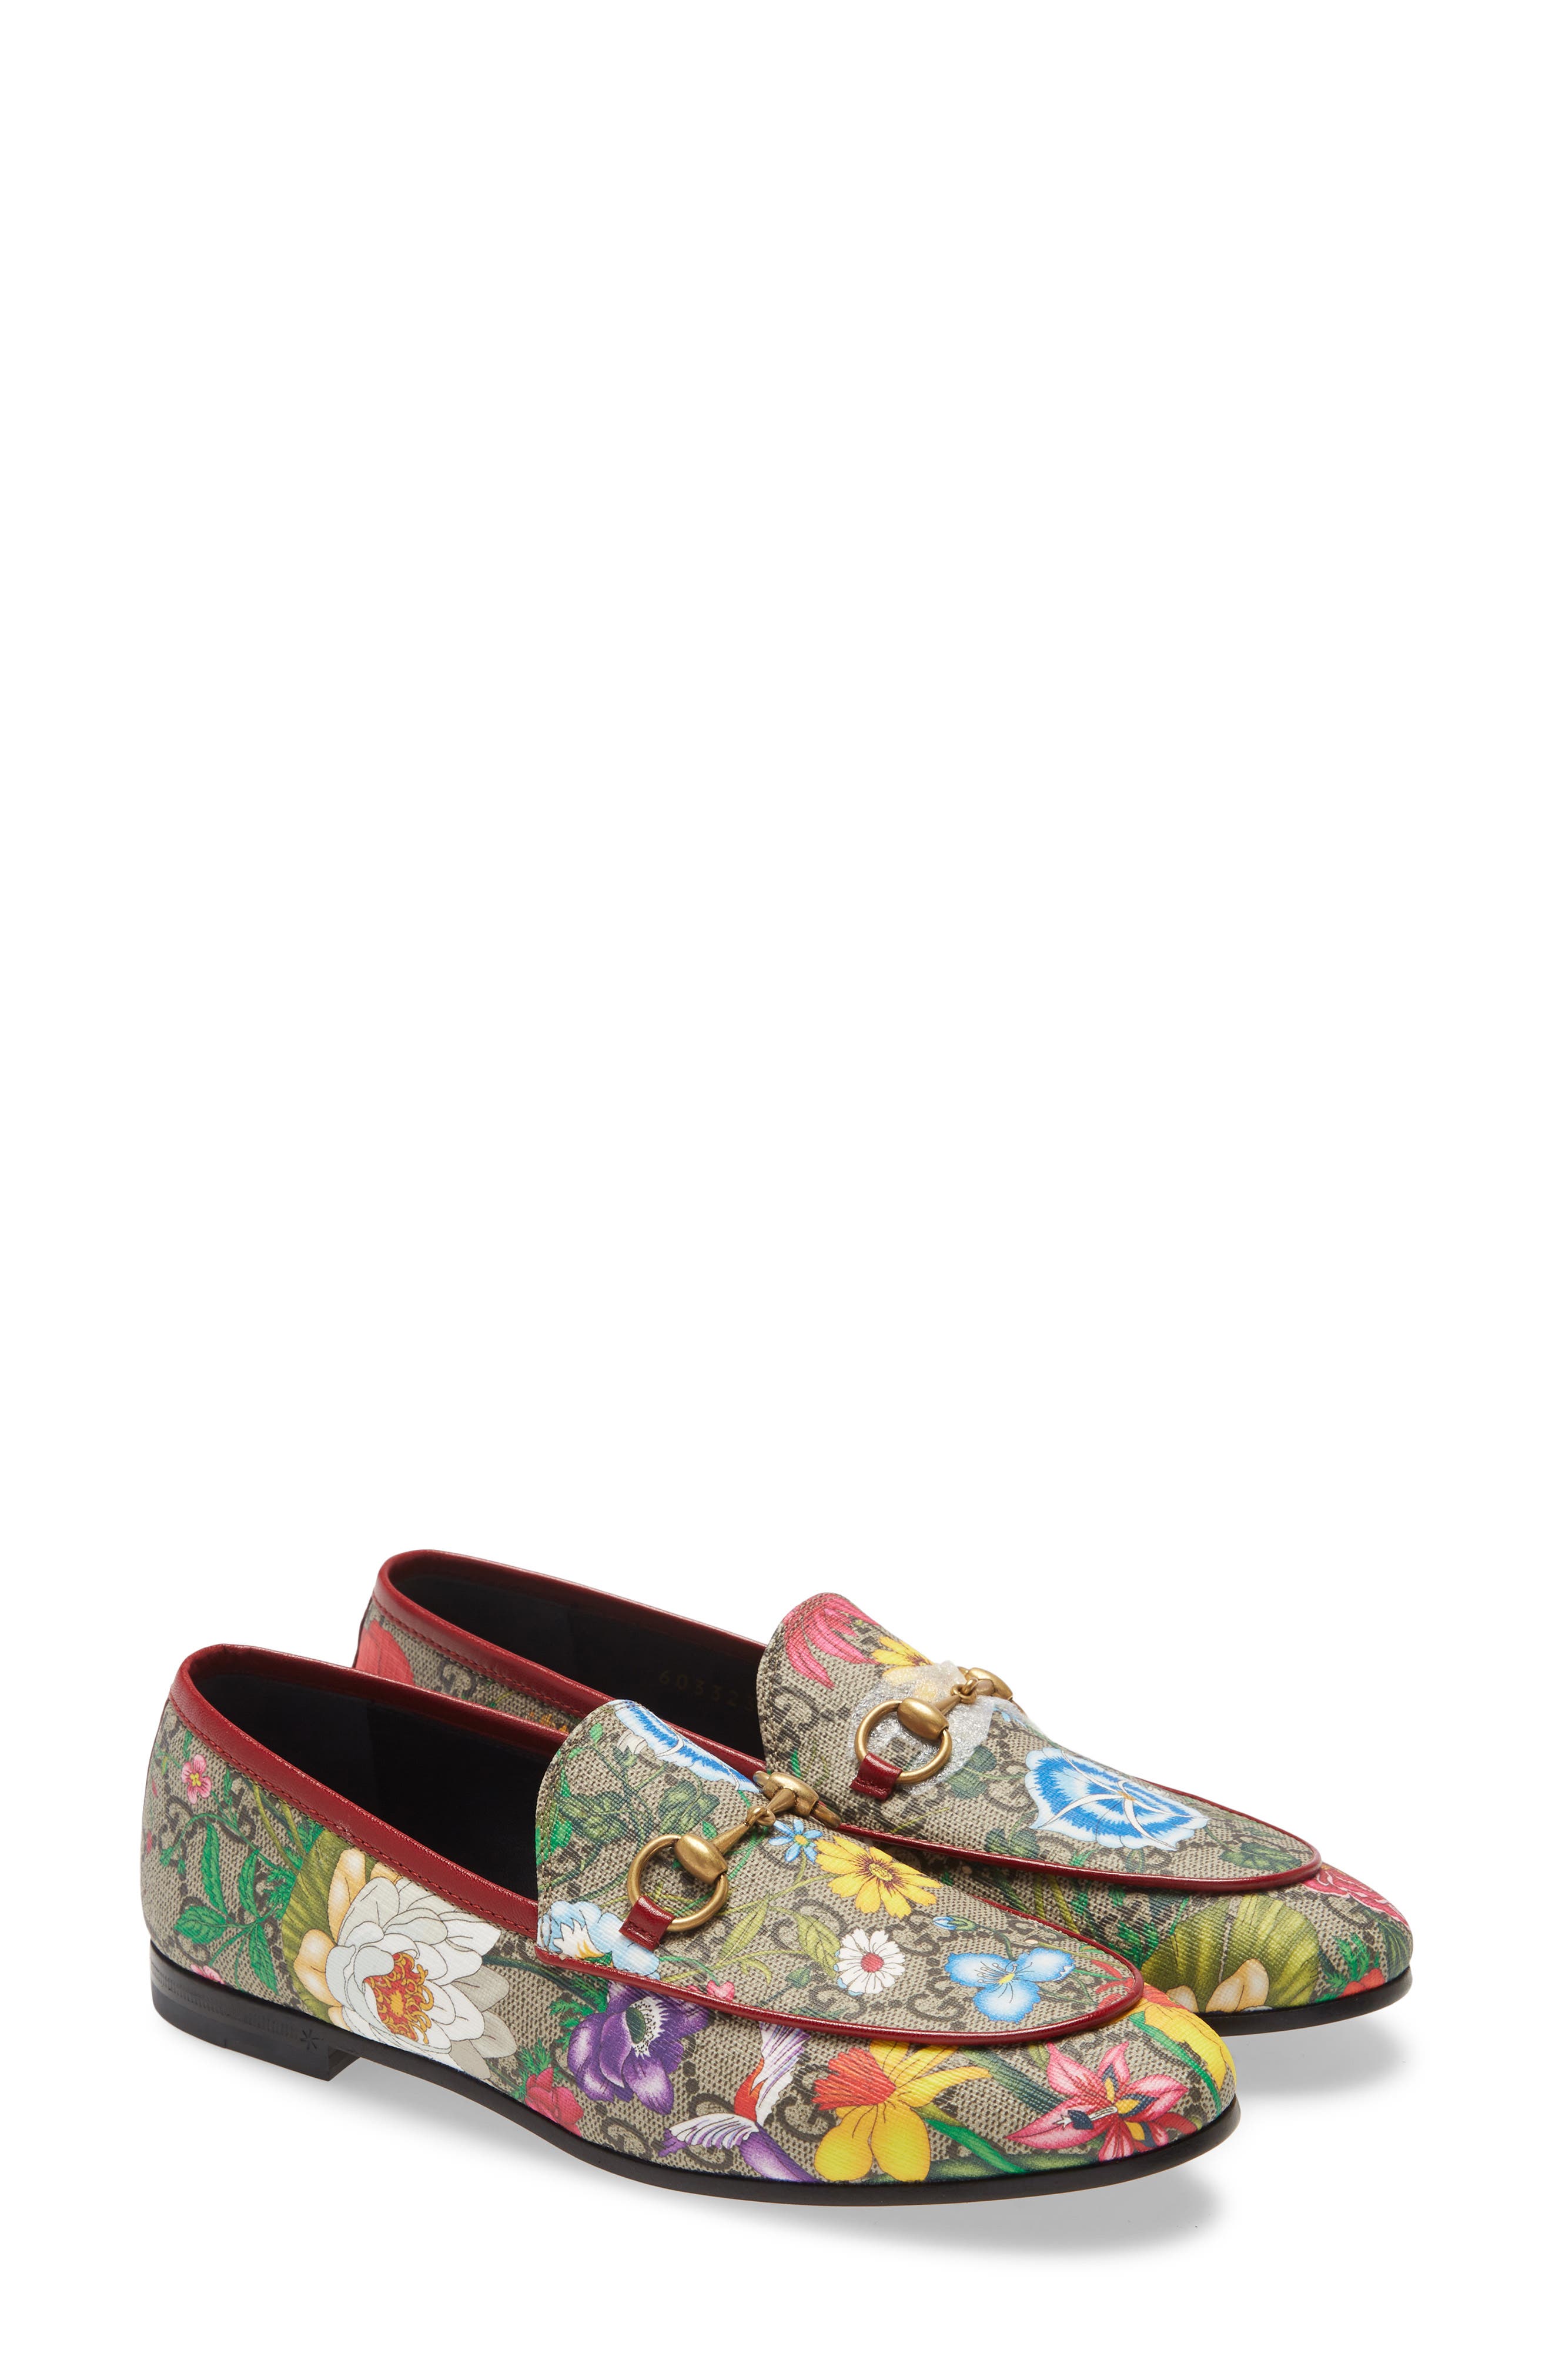 gucci floral print shoes